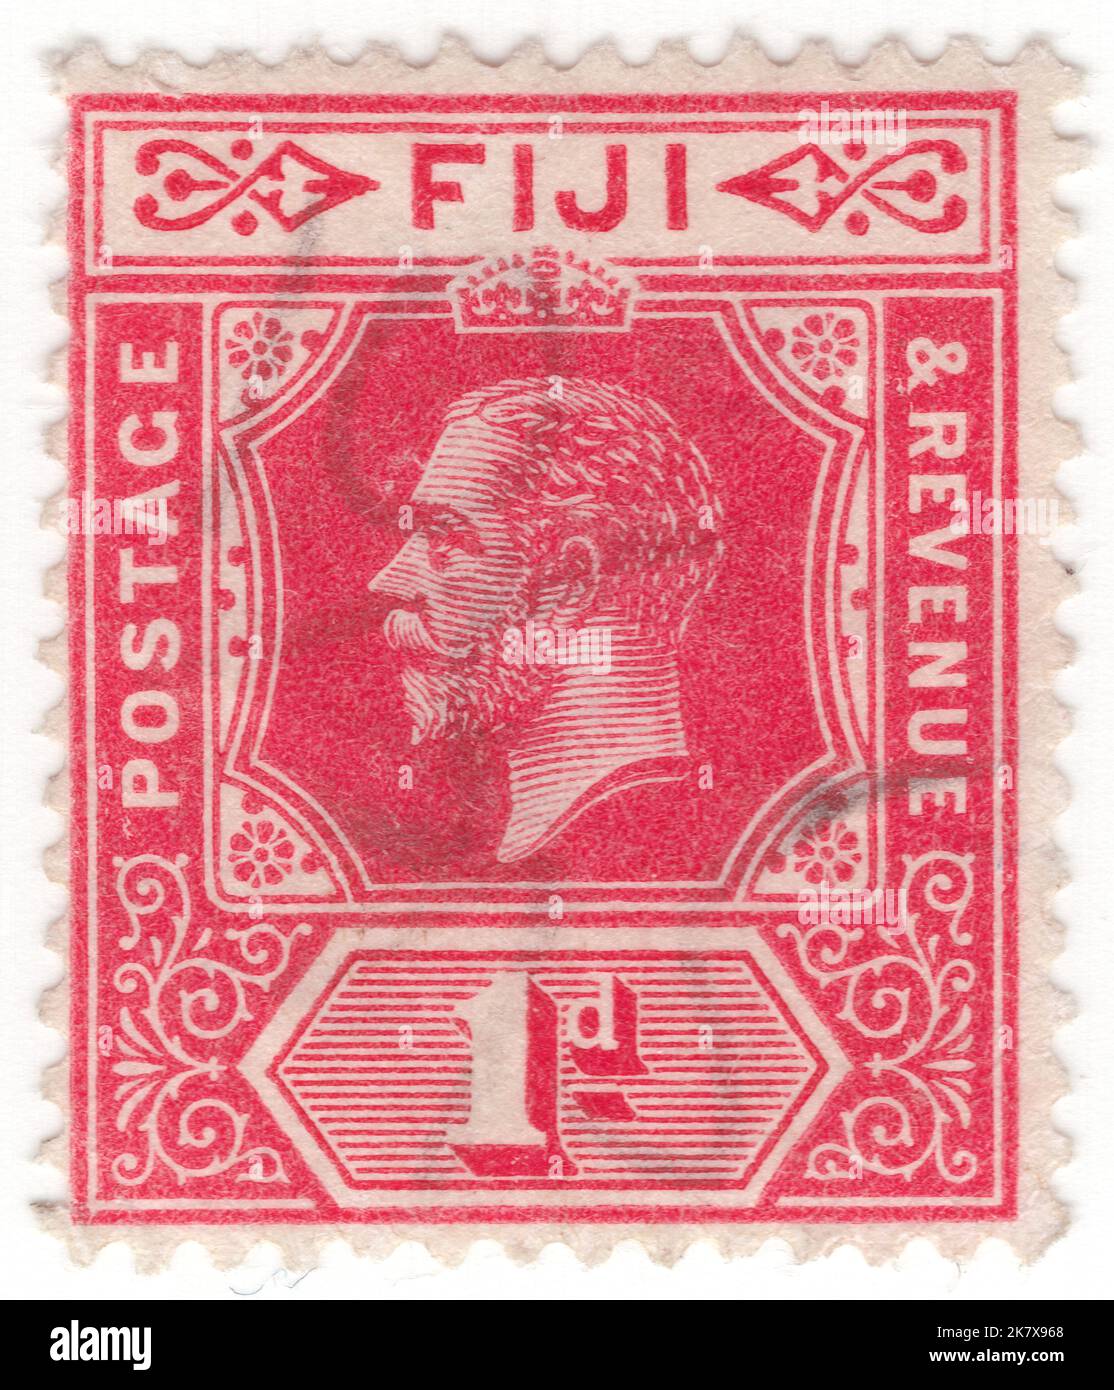 FIDSCHI - 1912: Eine 1 Pence scharlachrote Briefmarke, die das Porträt von König George V. zeigt Stockfoto